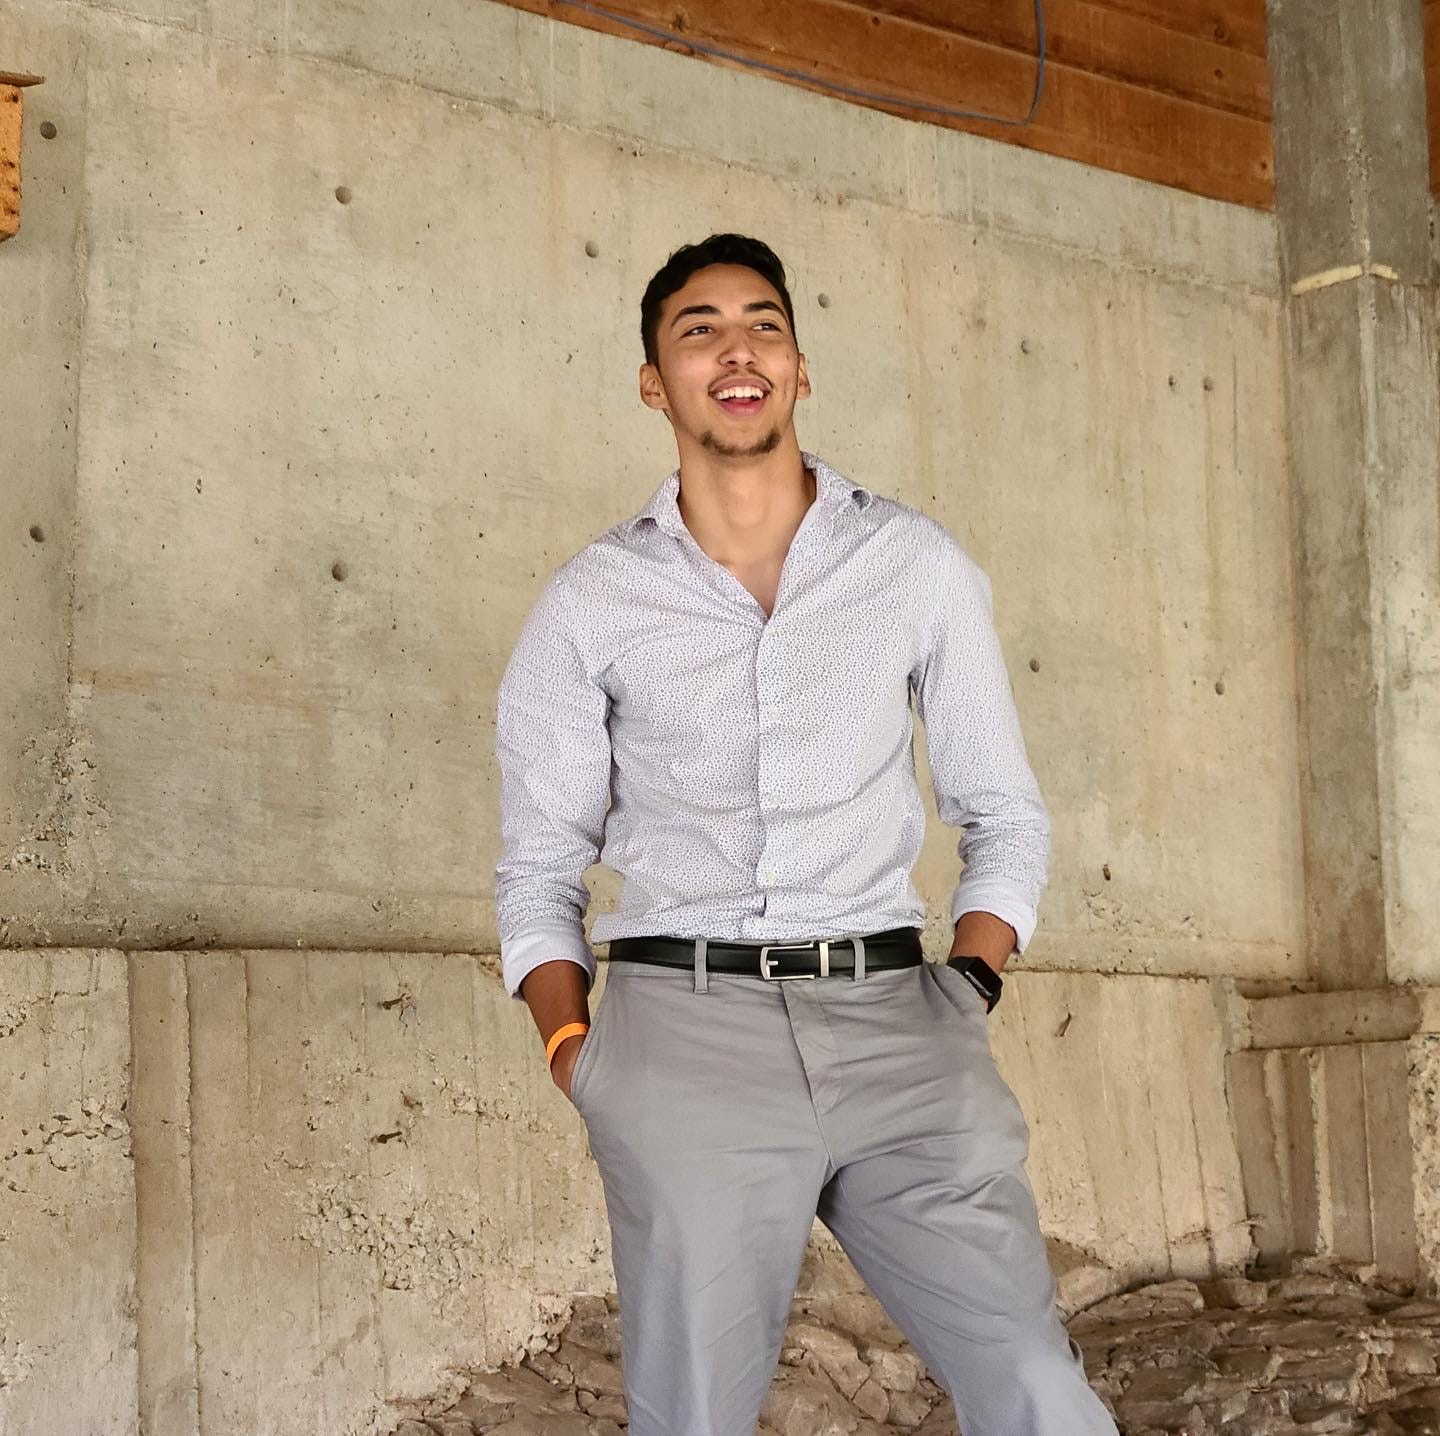 Kenneth Velásquez es estudiante de arquitectura en la Universidad Estatal de Arizona. Se mudó a Tempe para ir a la escuela y tiene dificultades para encontrar a otros salvadoreños en el área metropolitana.